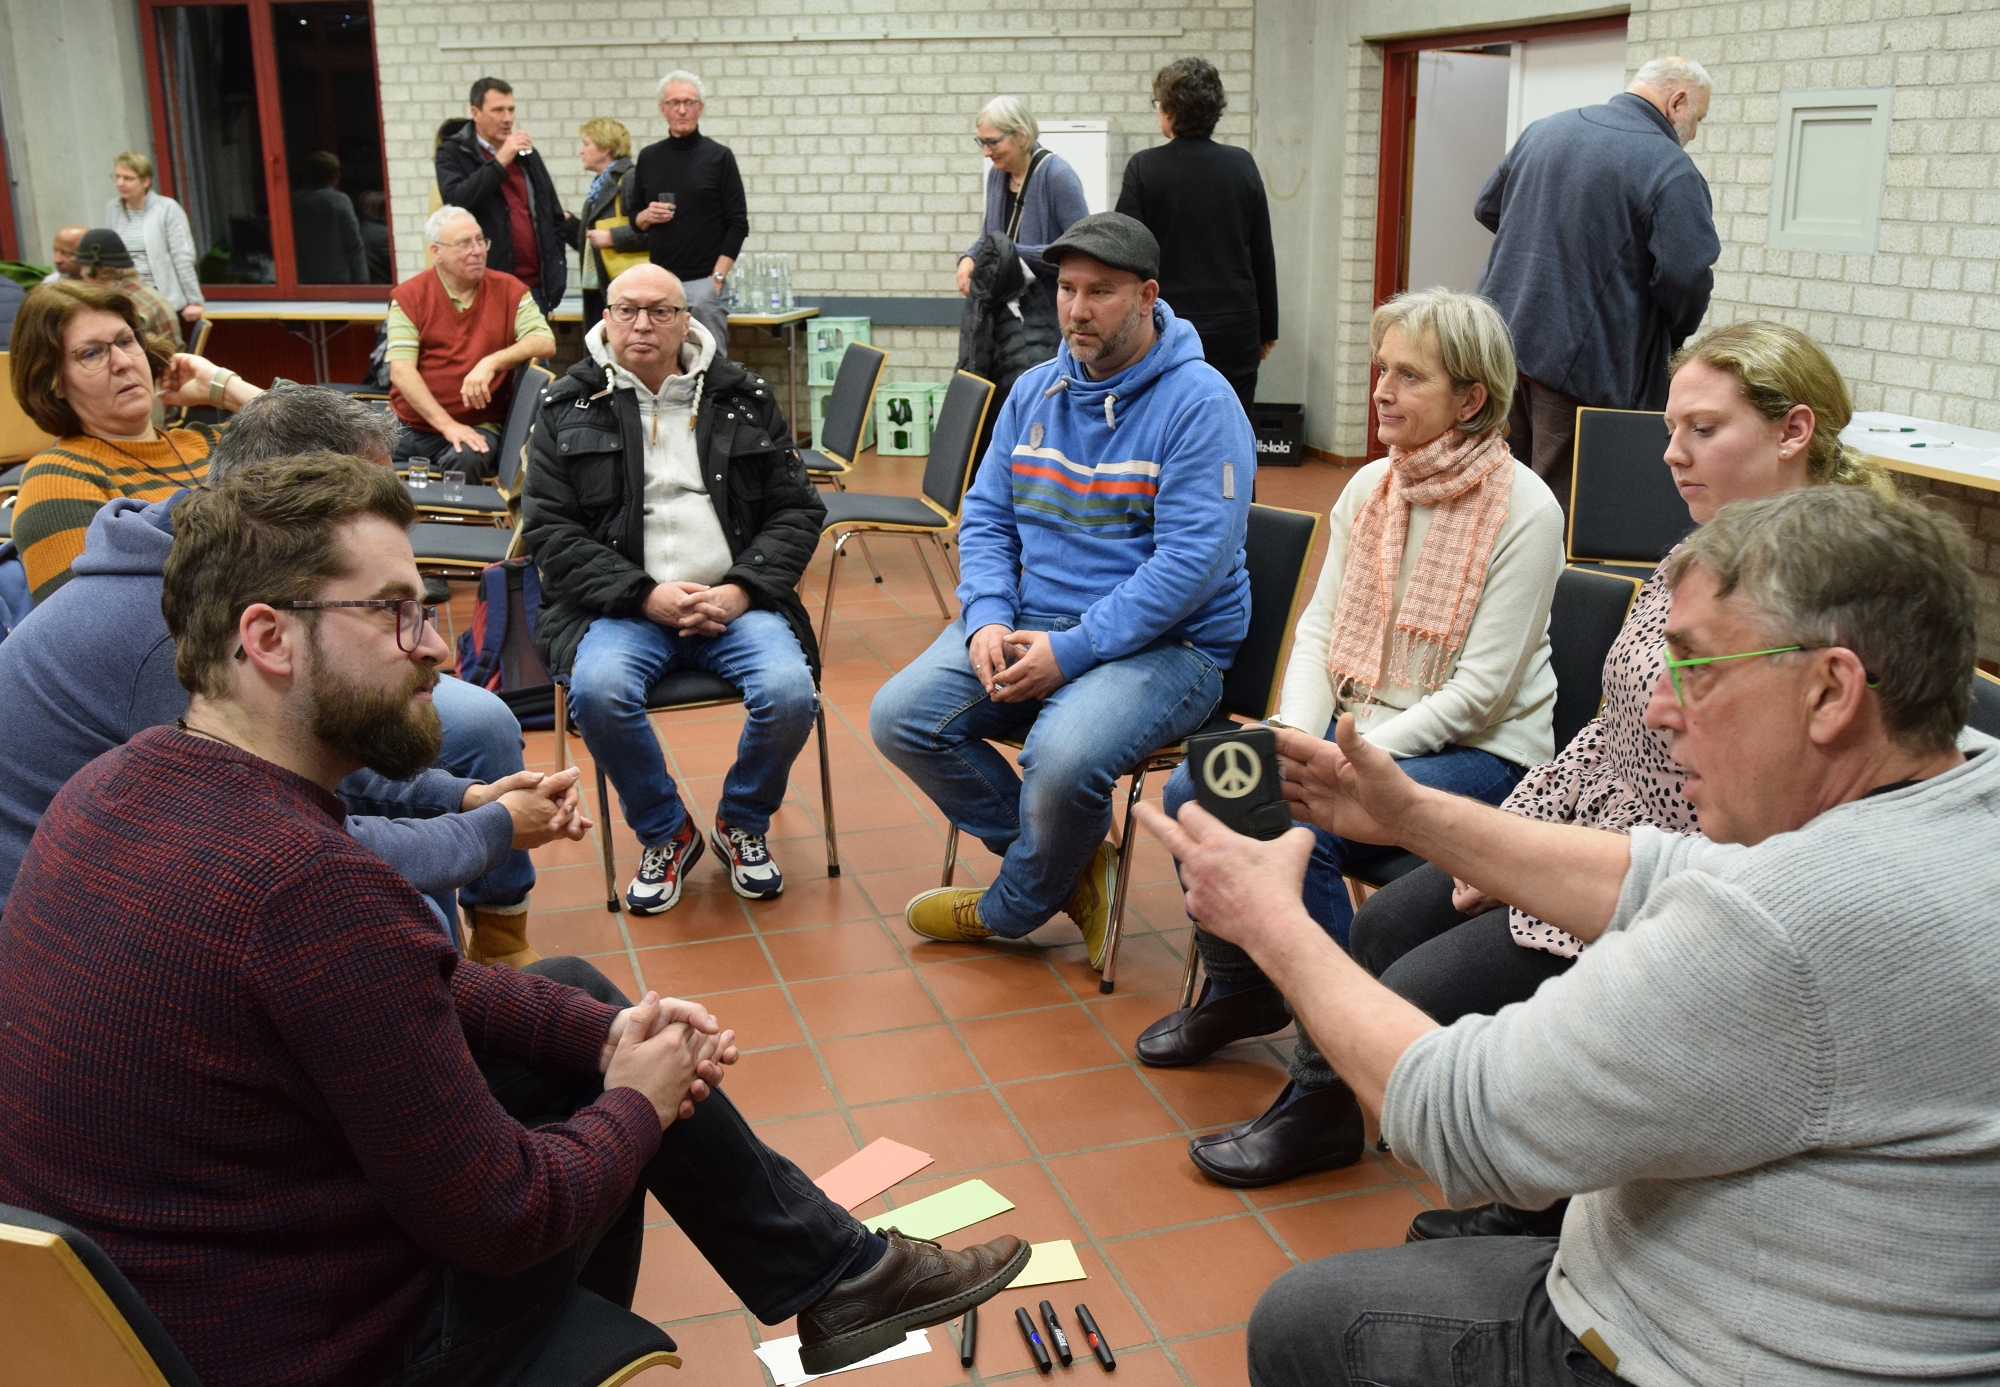 Am 27. März geht es los mit den Fokusgruppen. Schon beim Auftakt von '#Mitten in Herzogenrath' wurde munter diskutiert.